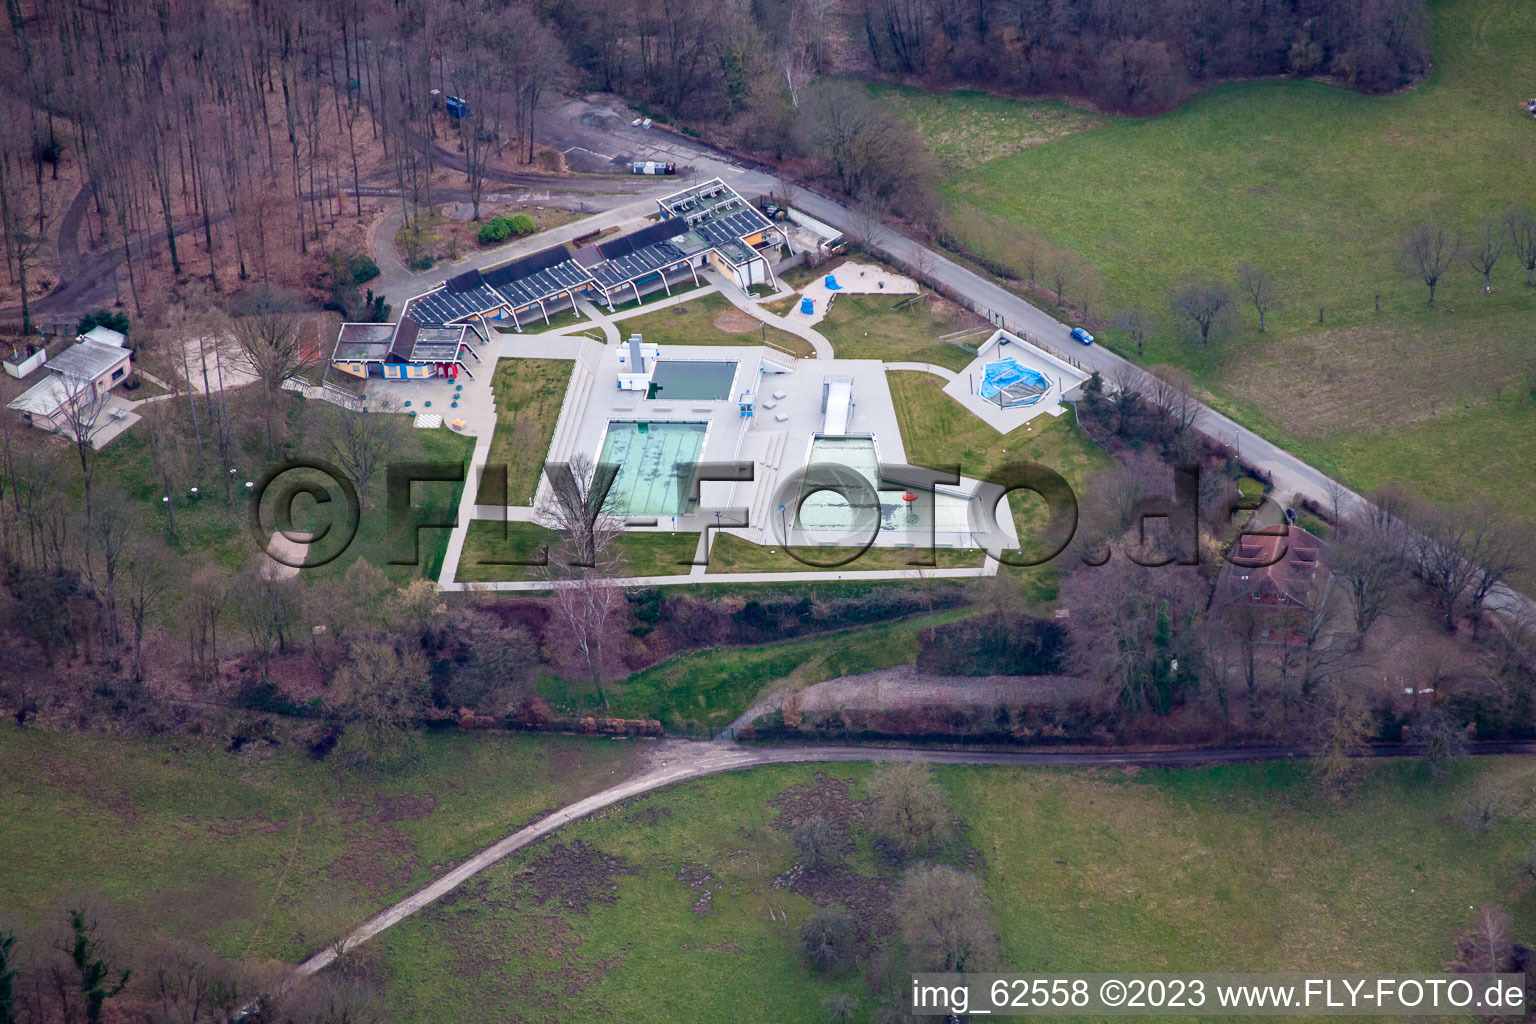 Vue aérienne de La piscine extérieure à Malsch dans le département Bade-Wurtemberg, Allemagne